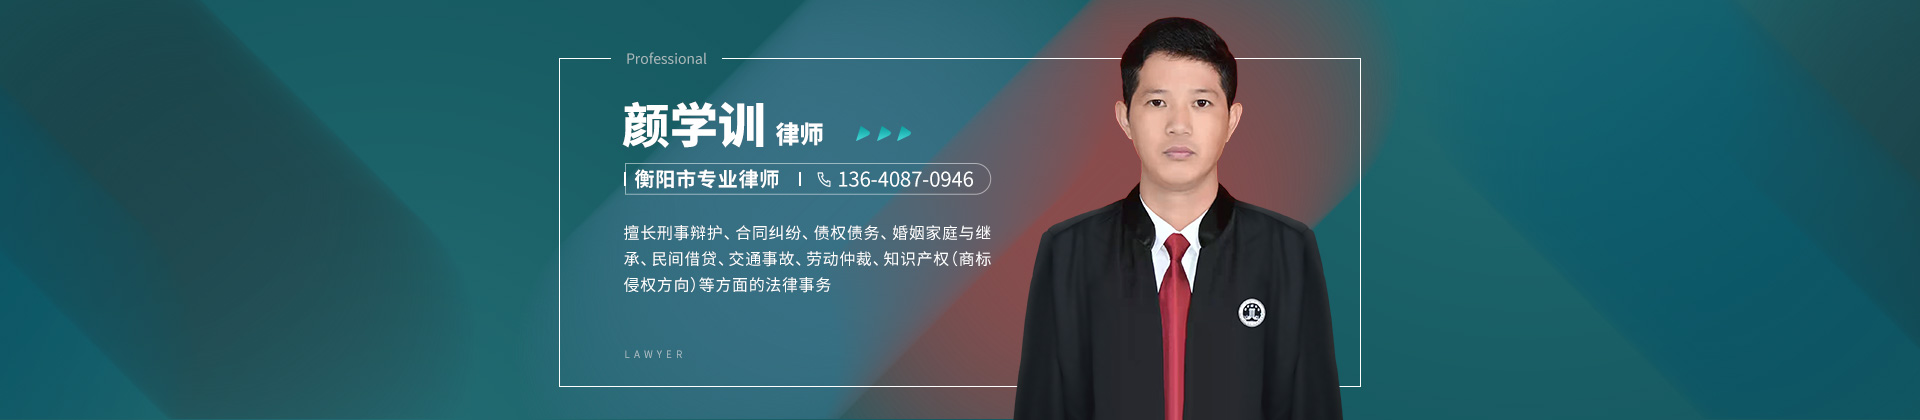 珠晖区法律顾问律师-颜学训律师